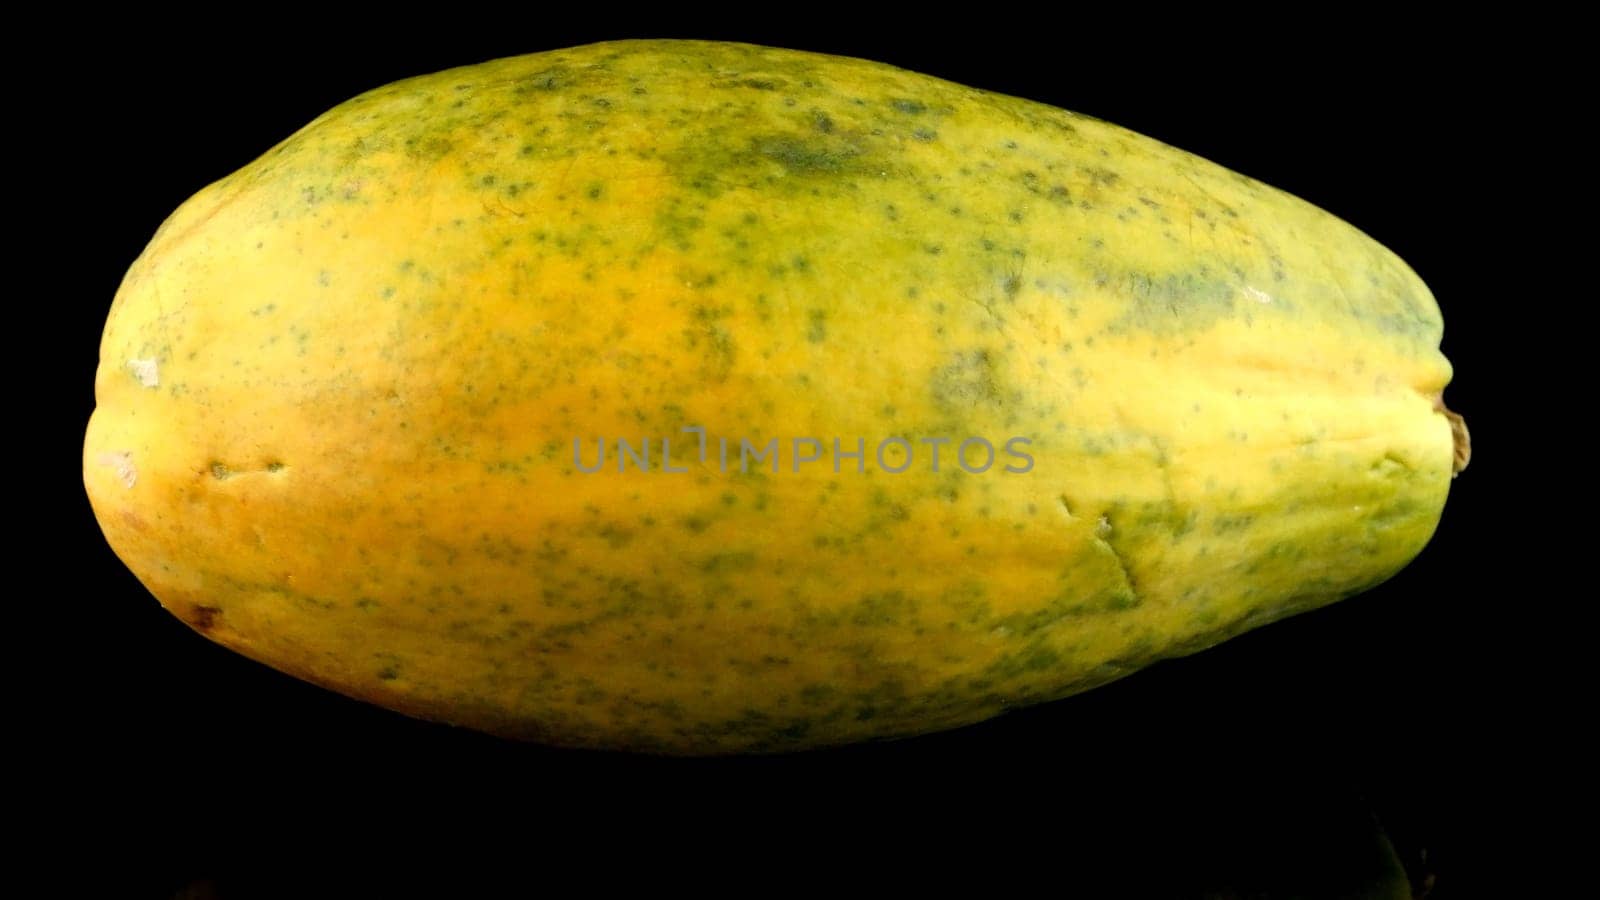 Papaya isolated on a black background